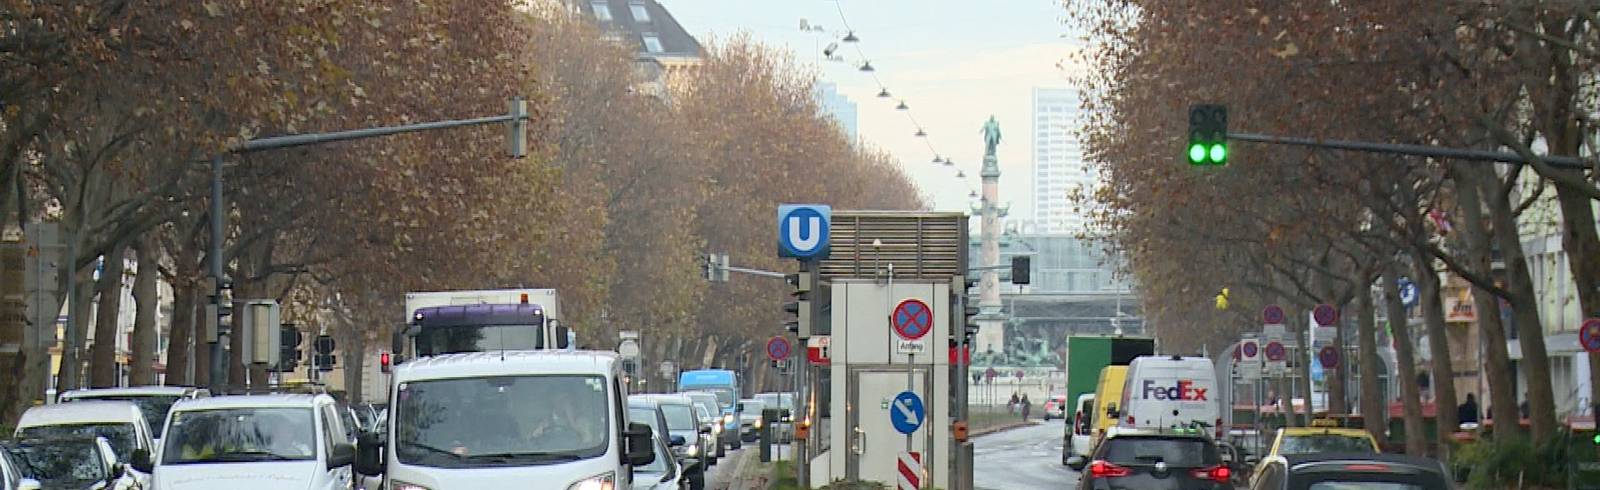 Praterstraße wird zum "Pop-up-Radweg"